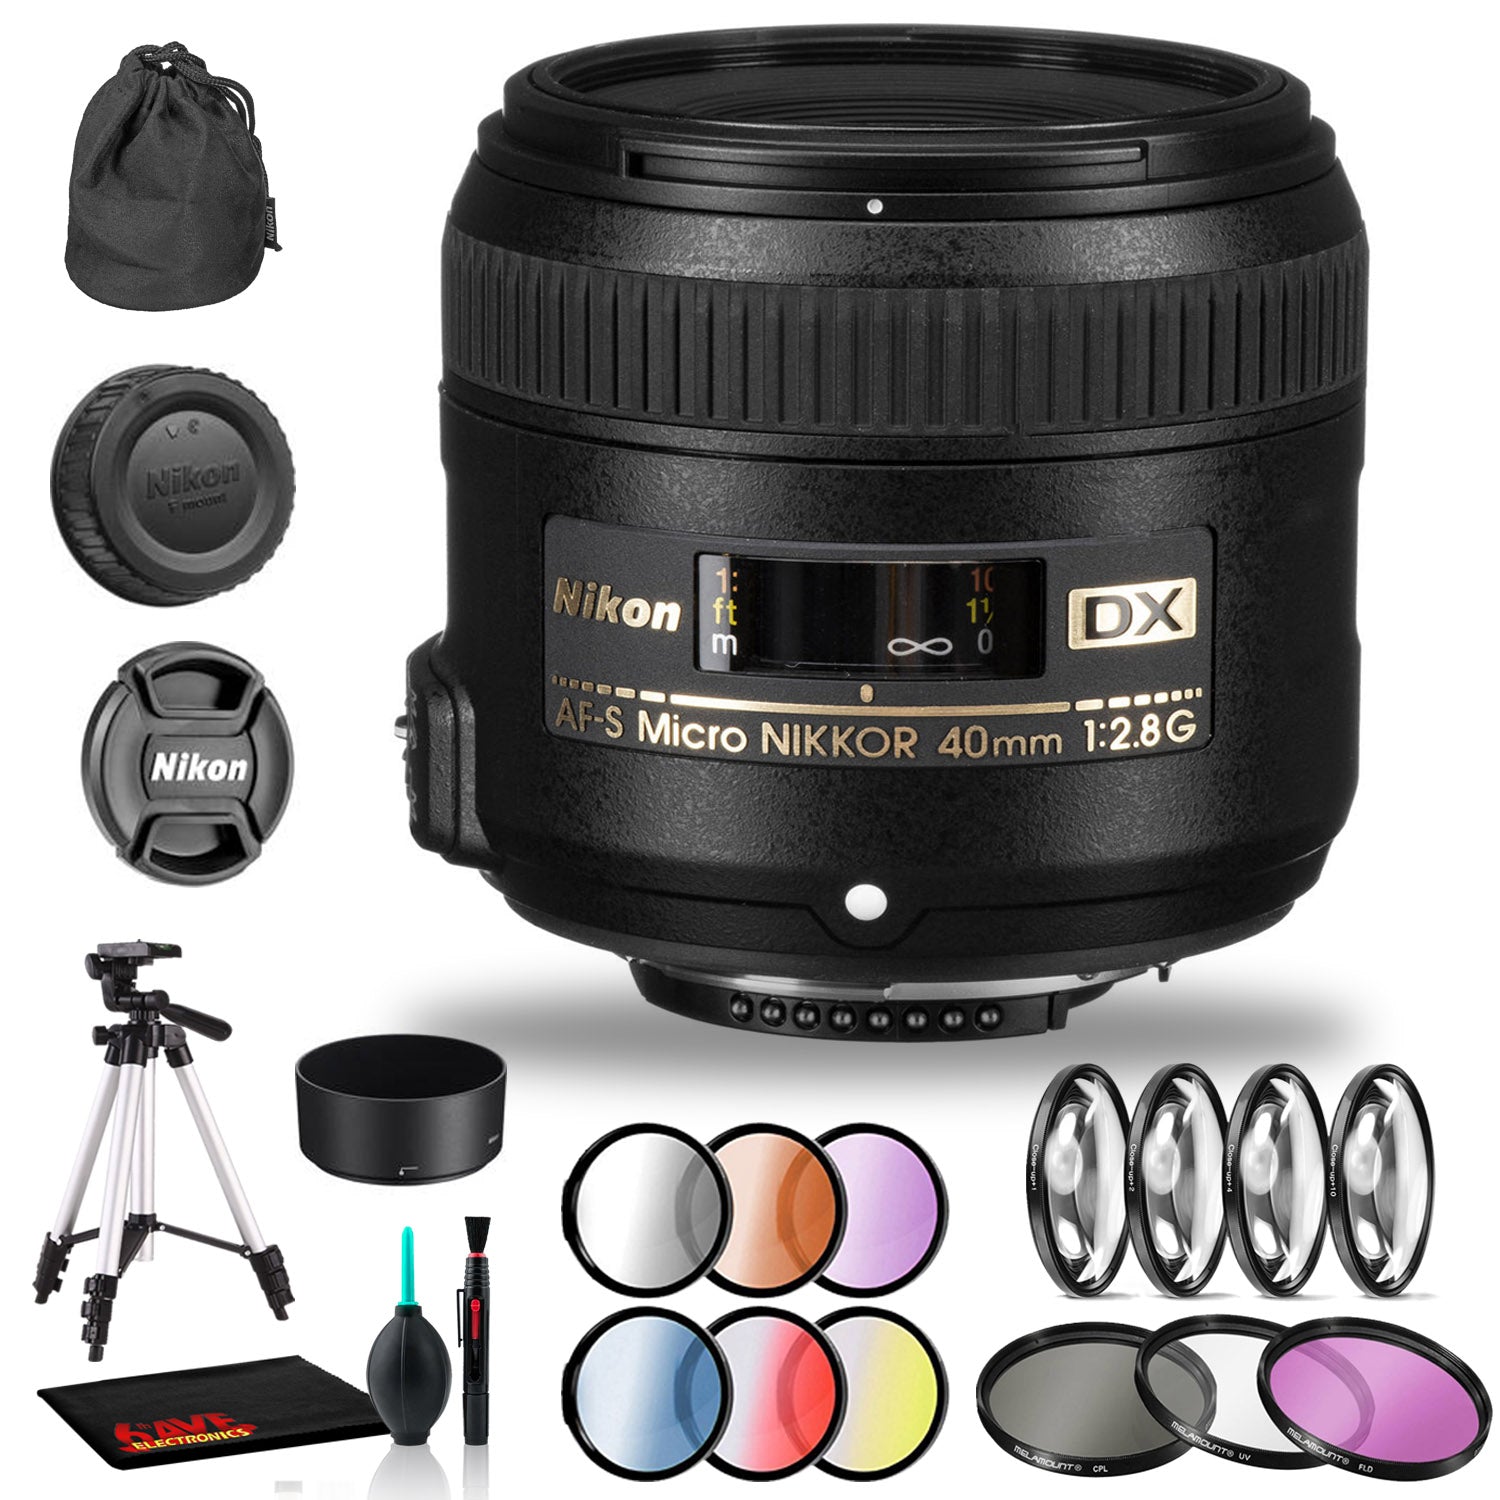 Nikon AF-S DX Micro NIKKOR 40mm f/2.8G Lens Includes Filter Kits and Tripod (Intl Model) Bundle